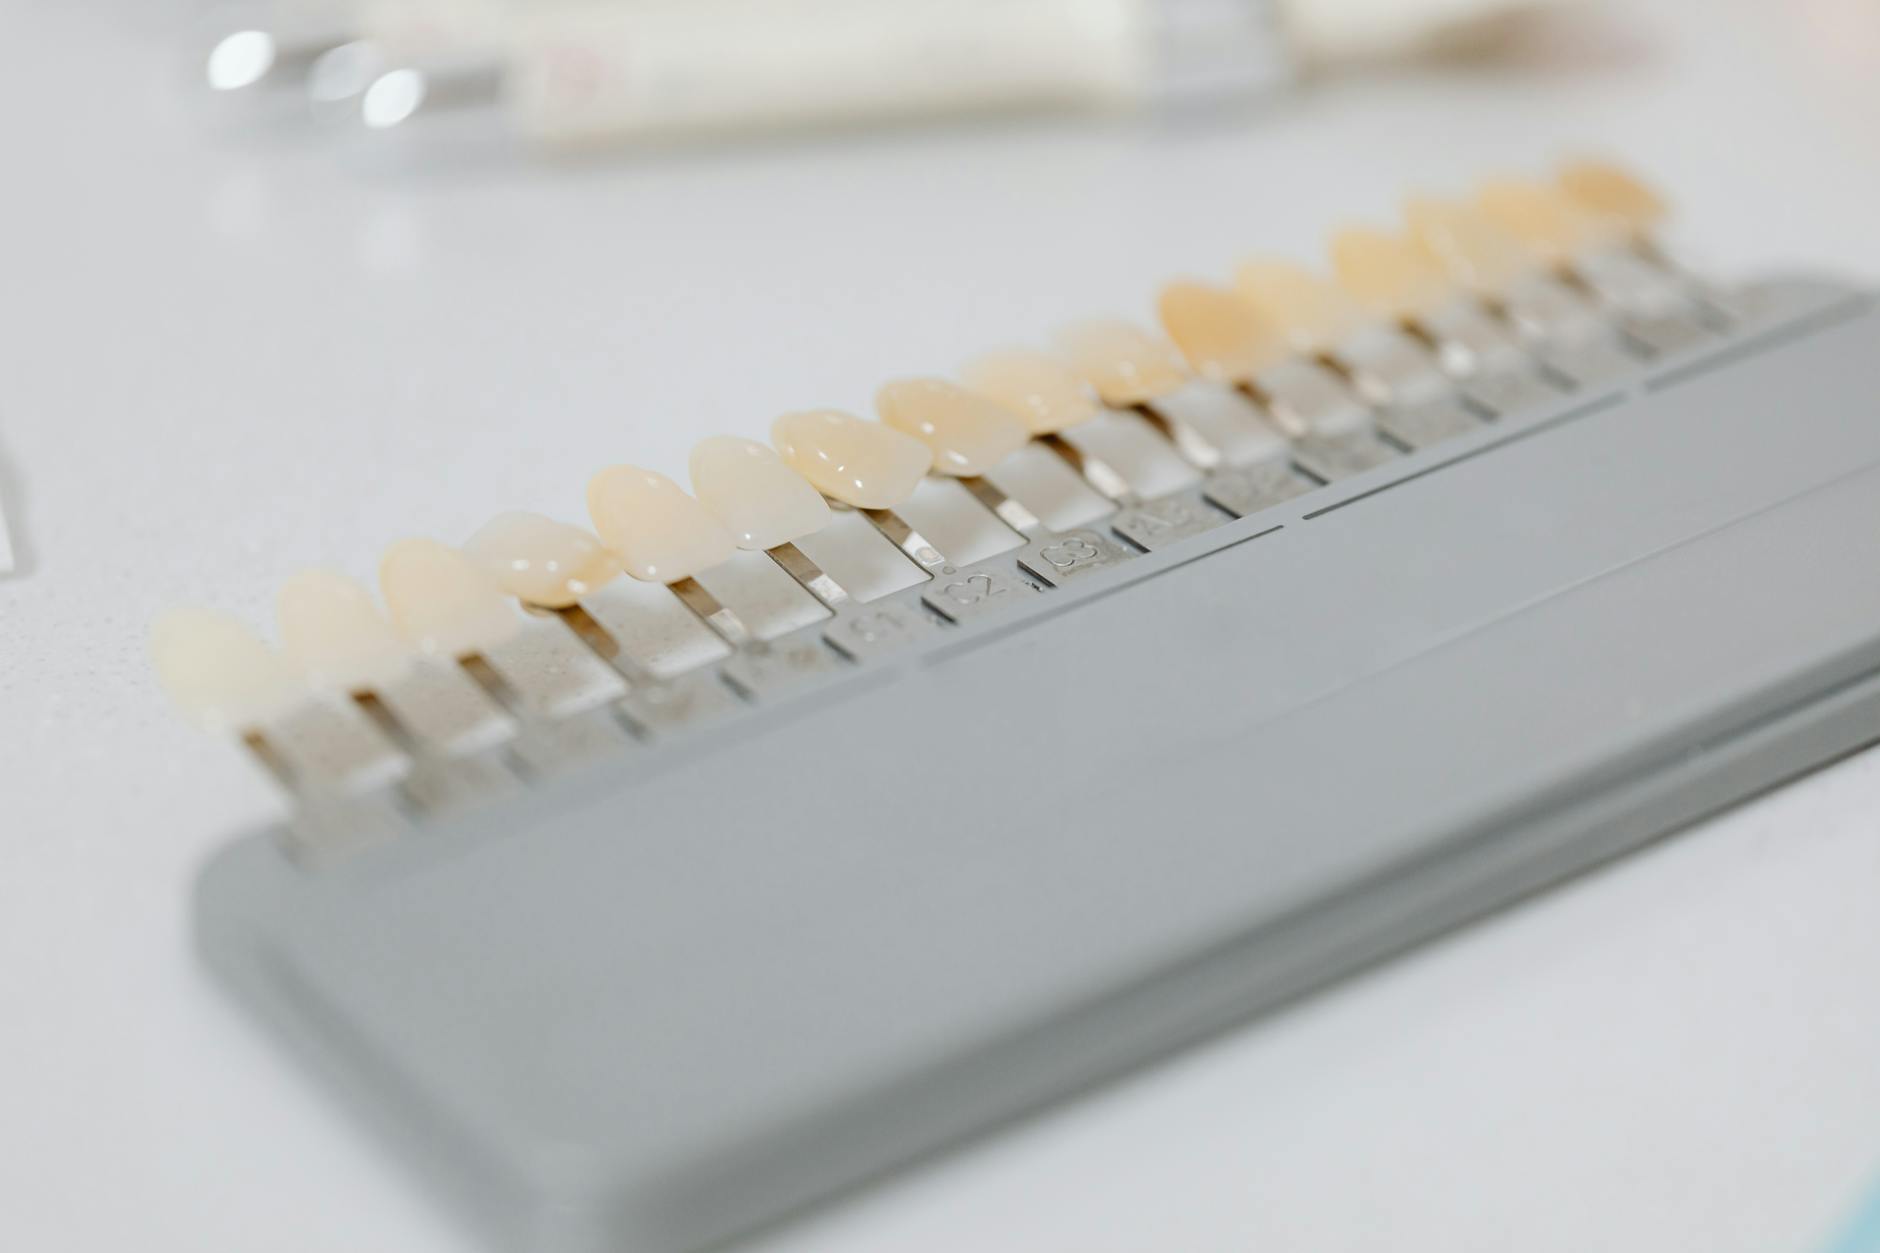 samples of teeth